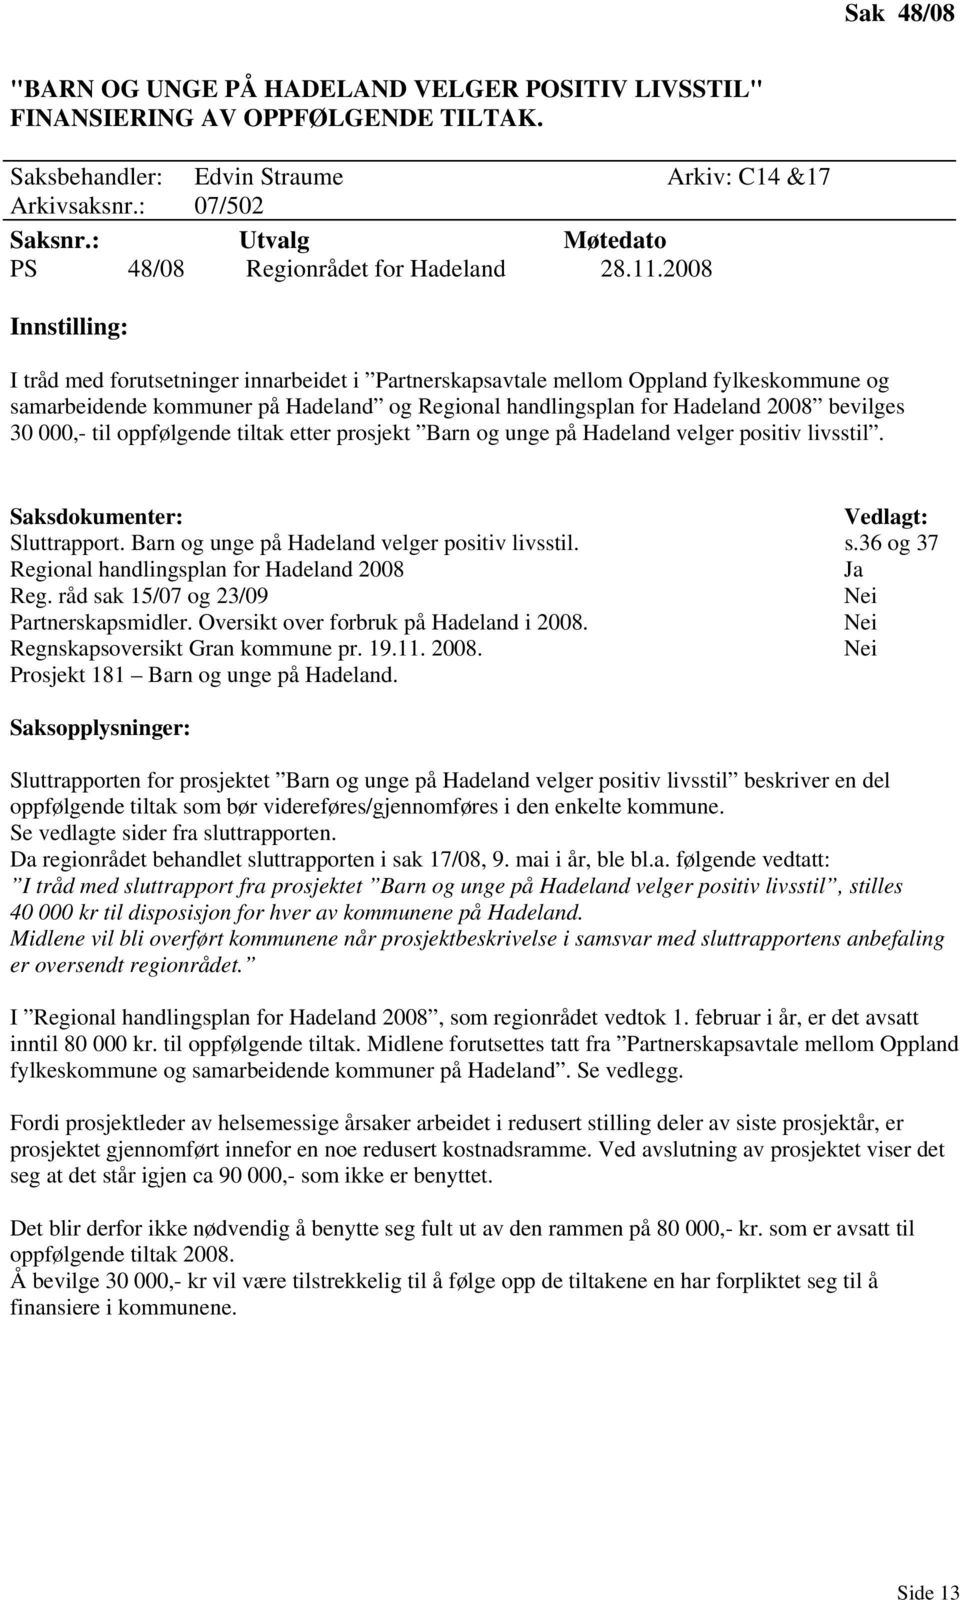 2008 Innstilling: I tråd med forutsetninger innarbeidet i Partnerskapsavtale mellom Oppland fylkeskommune og samarbeidende kommuner på Hadeland og Regional handlingsplan for Hadeland 2008 bevilges 30